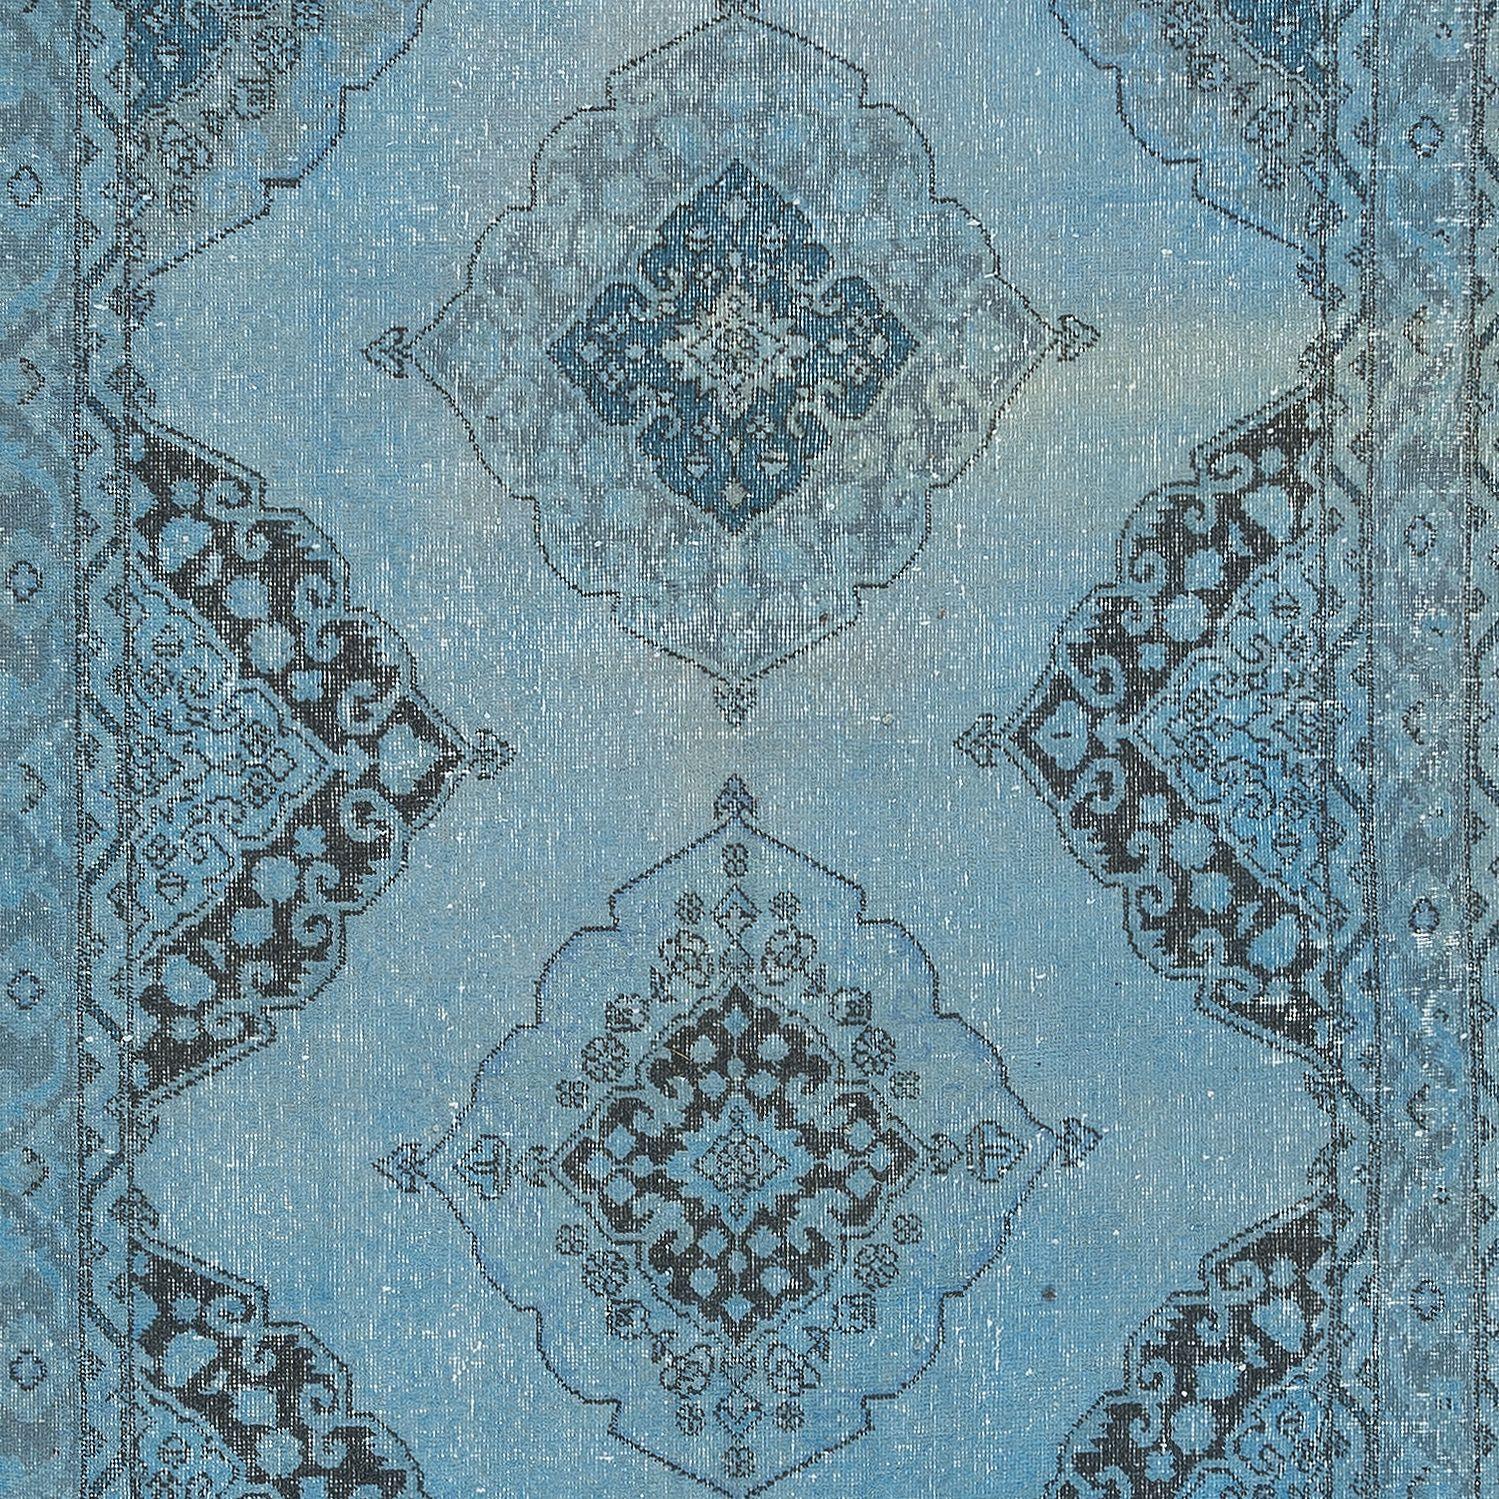 Turkish 4.6x12.6 Ft Handmade Runner Rug Kitchen, Light Blue Corridor Carpet for Hallway For Sale